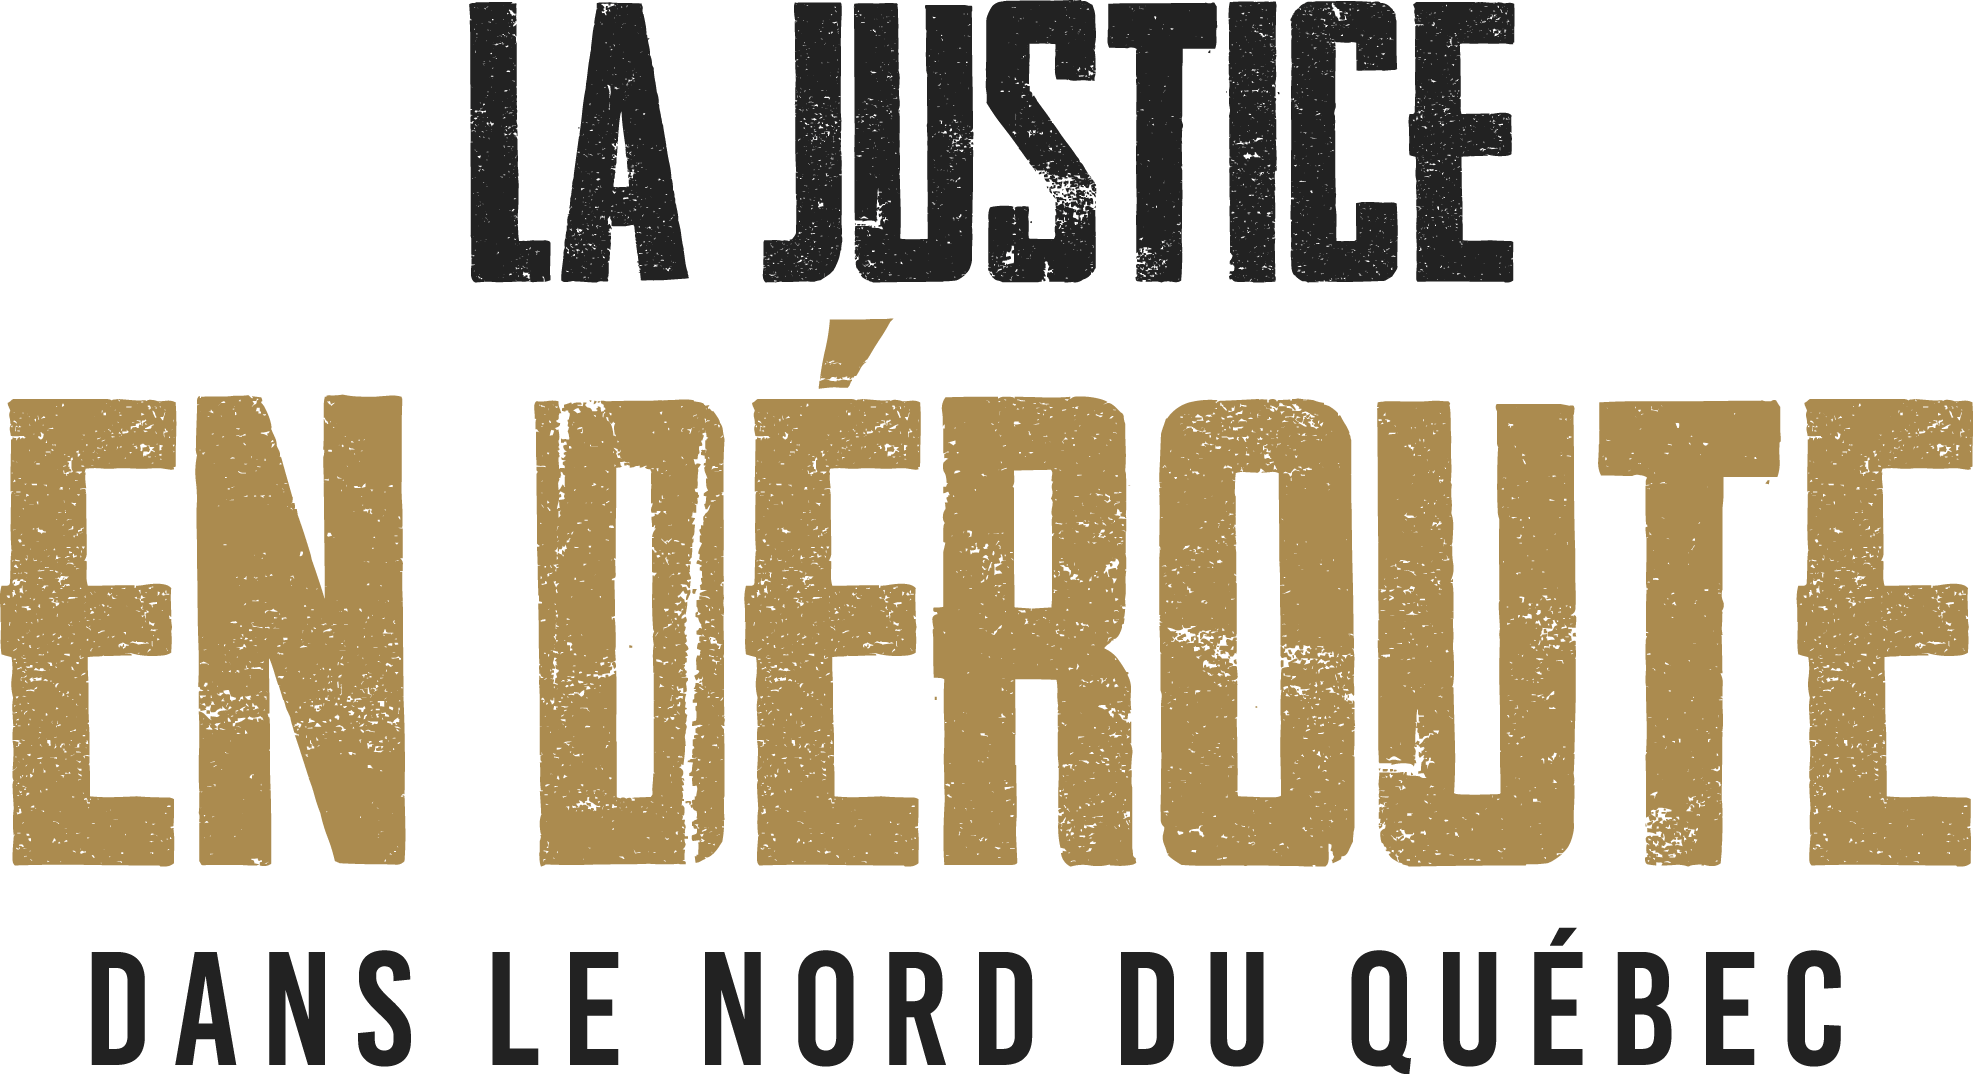 La justice en déroute dans le nord du Québec